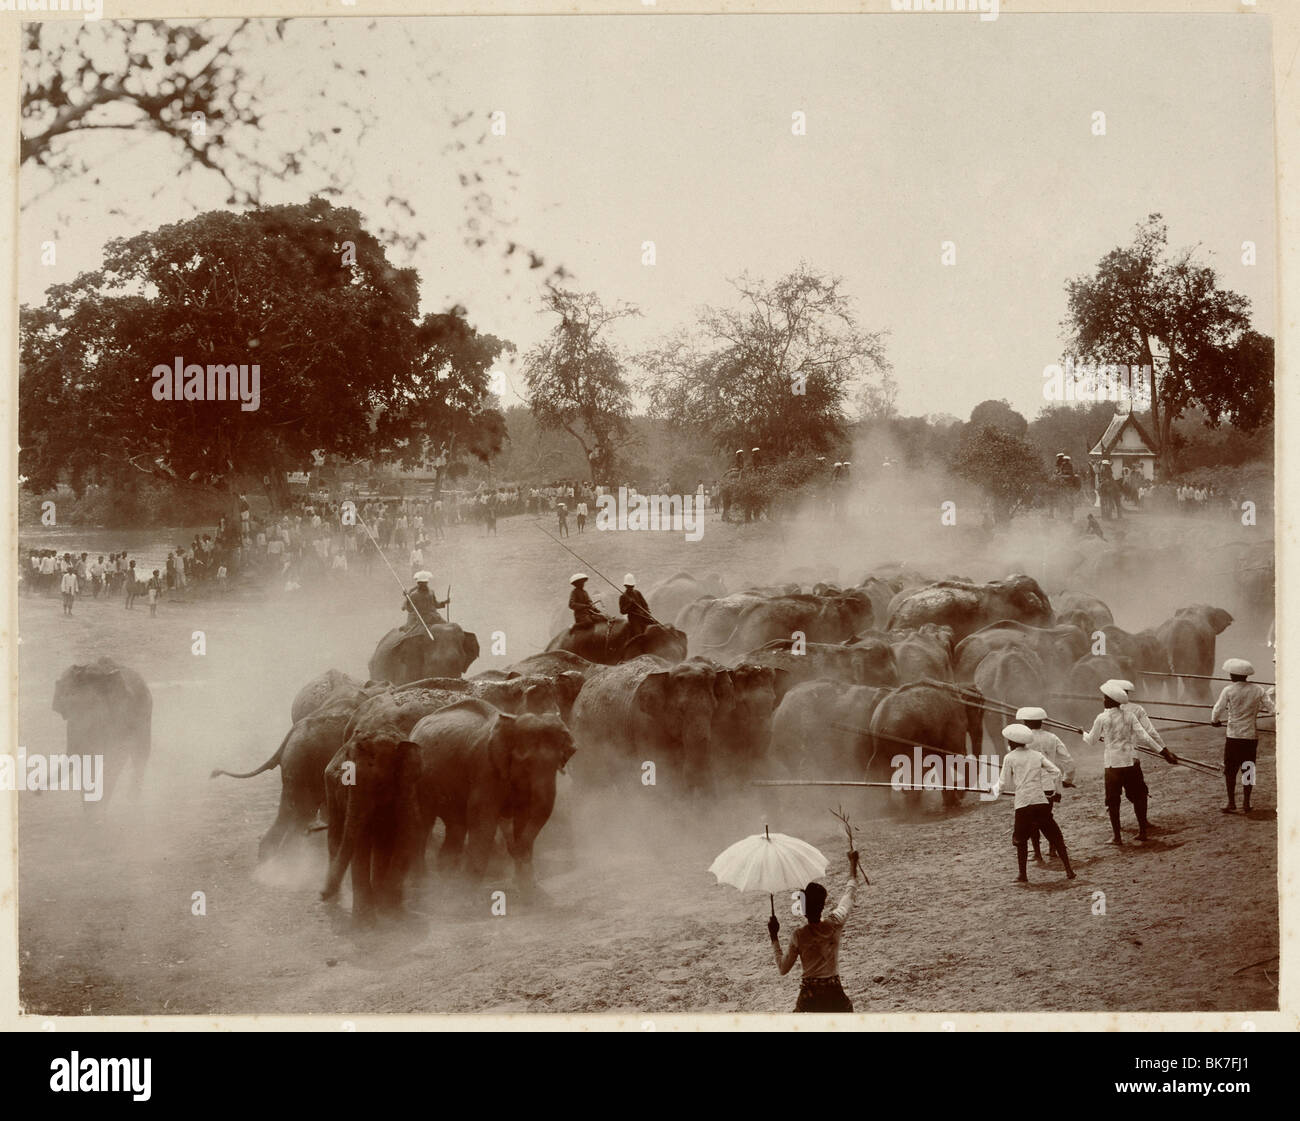 Phtoograph der königlichen Elefanten jagen in Ayutthaya um 1890, Thailand, Südostasien, Asien Stockfoto